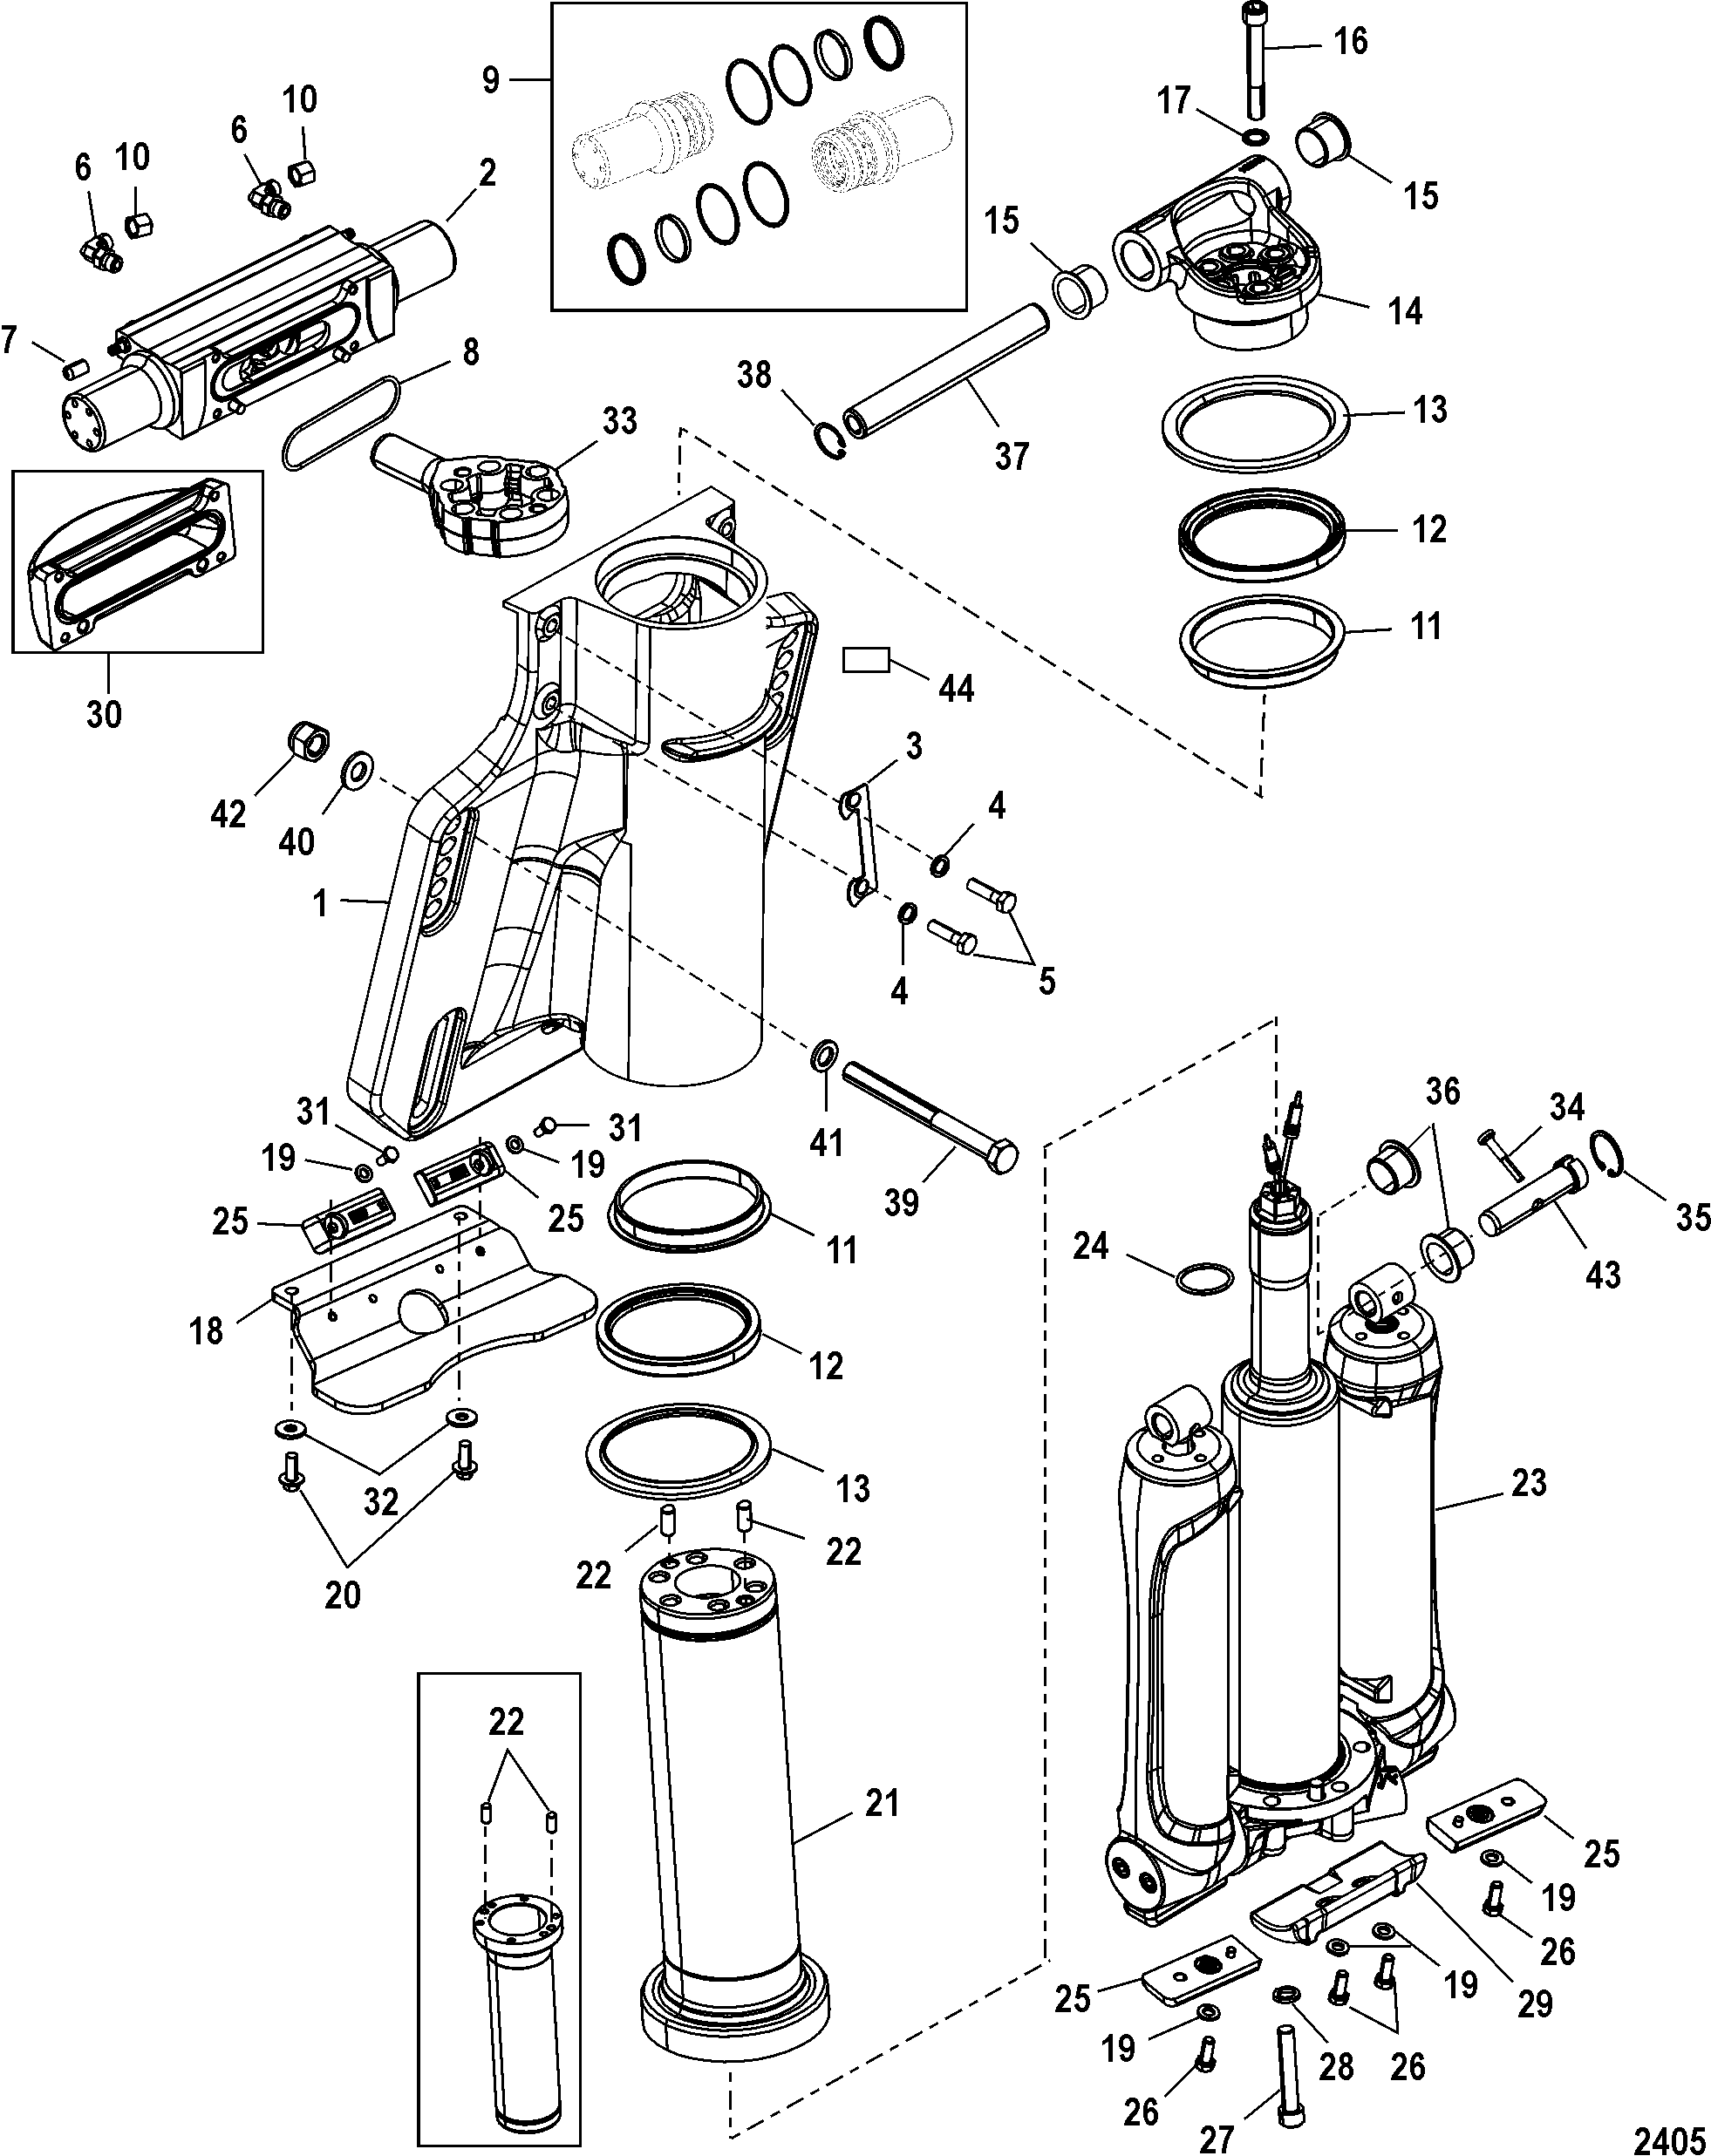 Power Trim/Steering Cylinder